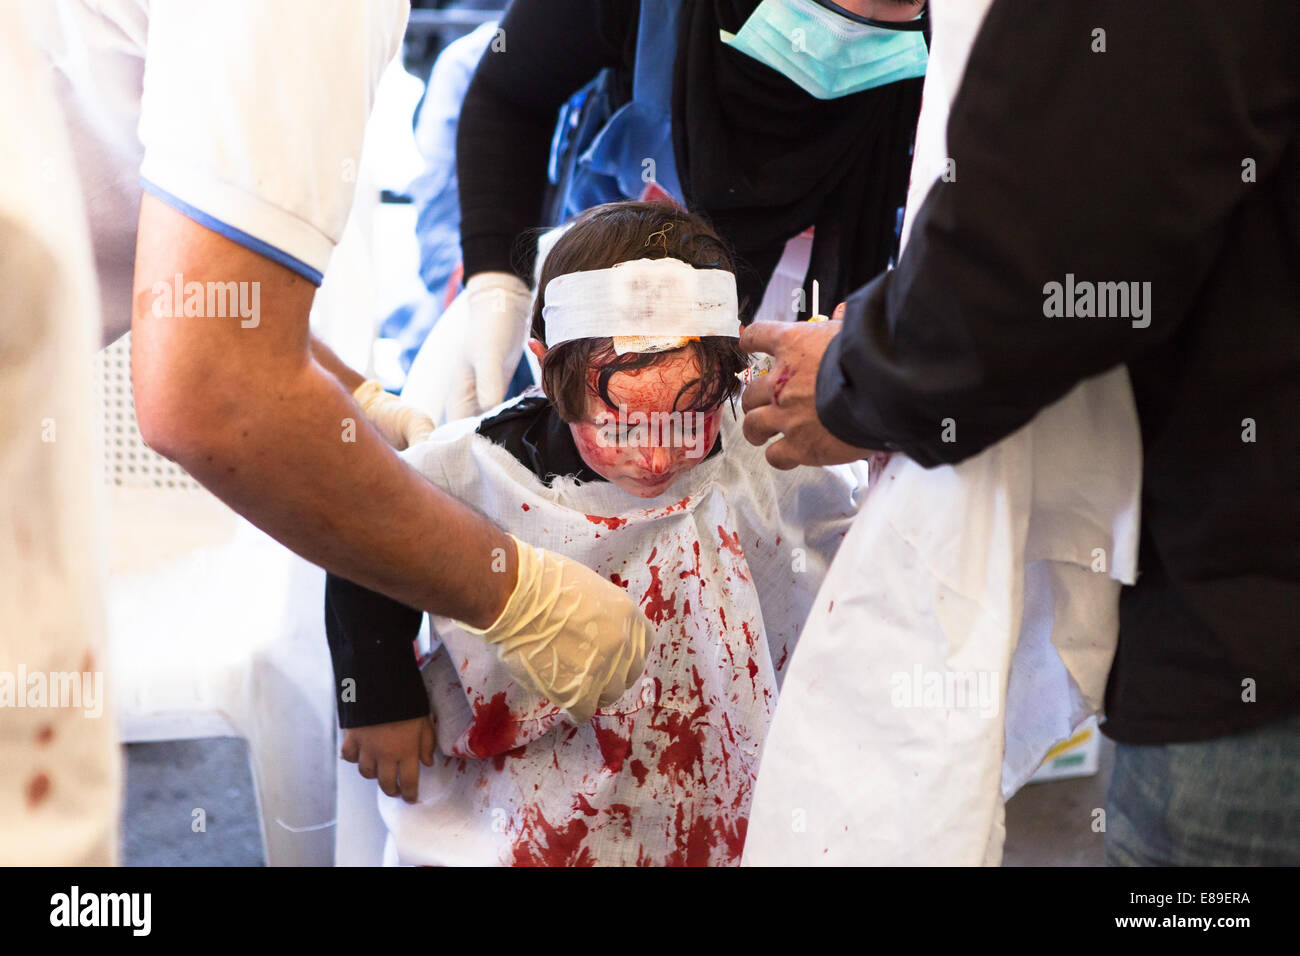 Un jeune garçon musulman chiite recevant des soins médicaux au cours de la journée d'Ashoura, Nabatieh, Liban. Banque D'Images